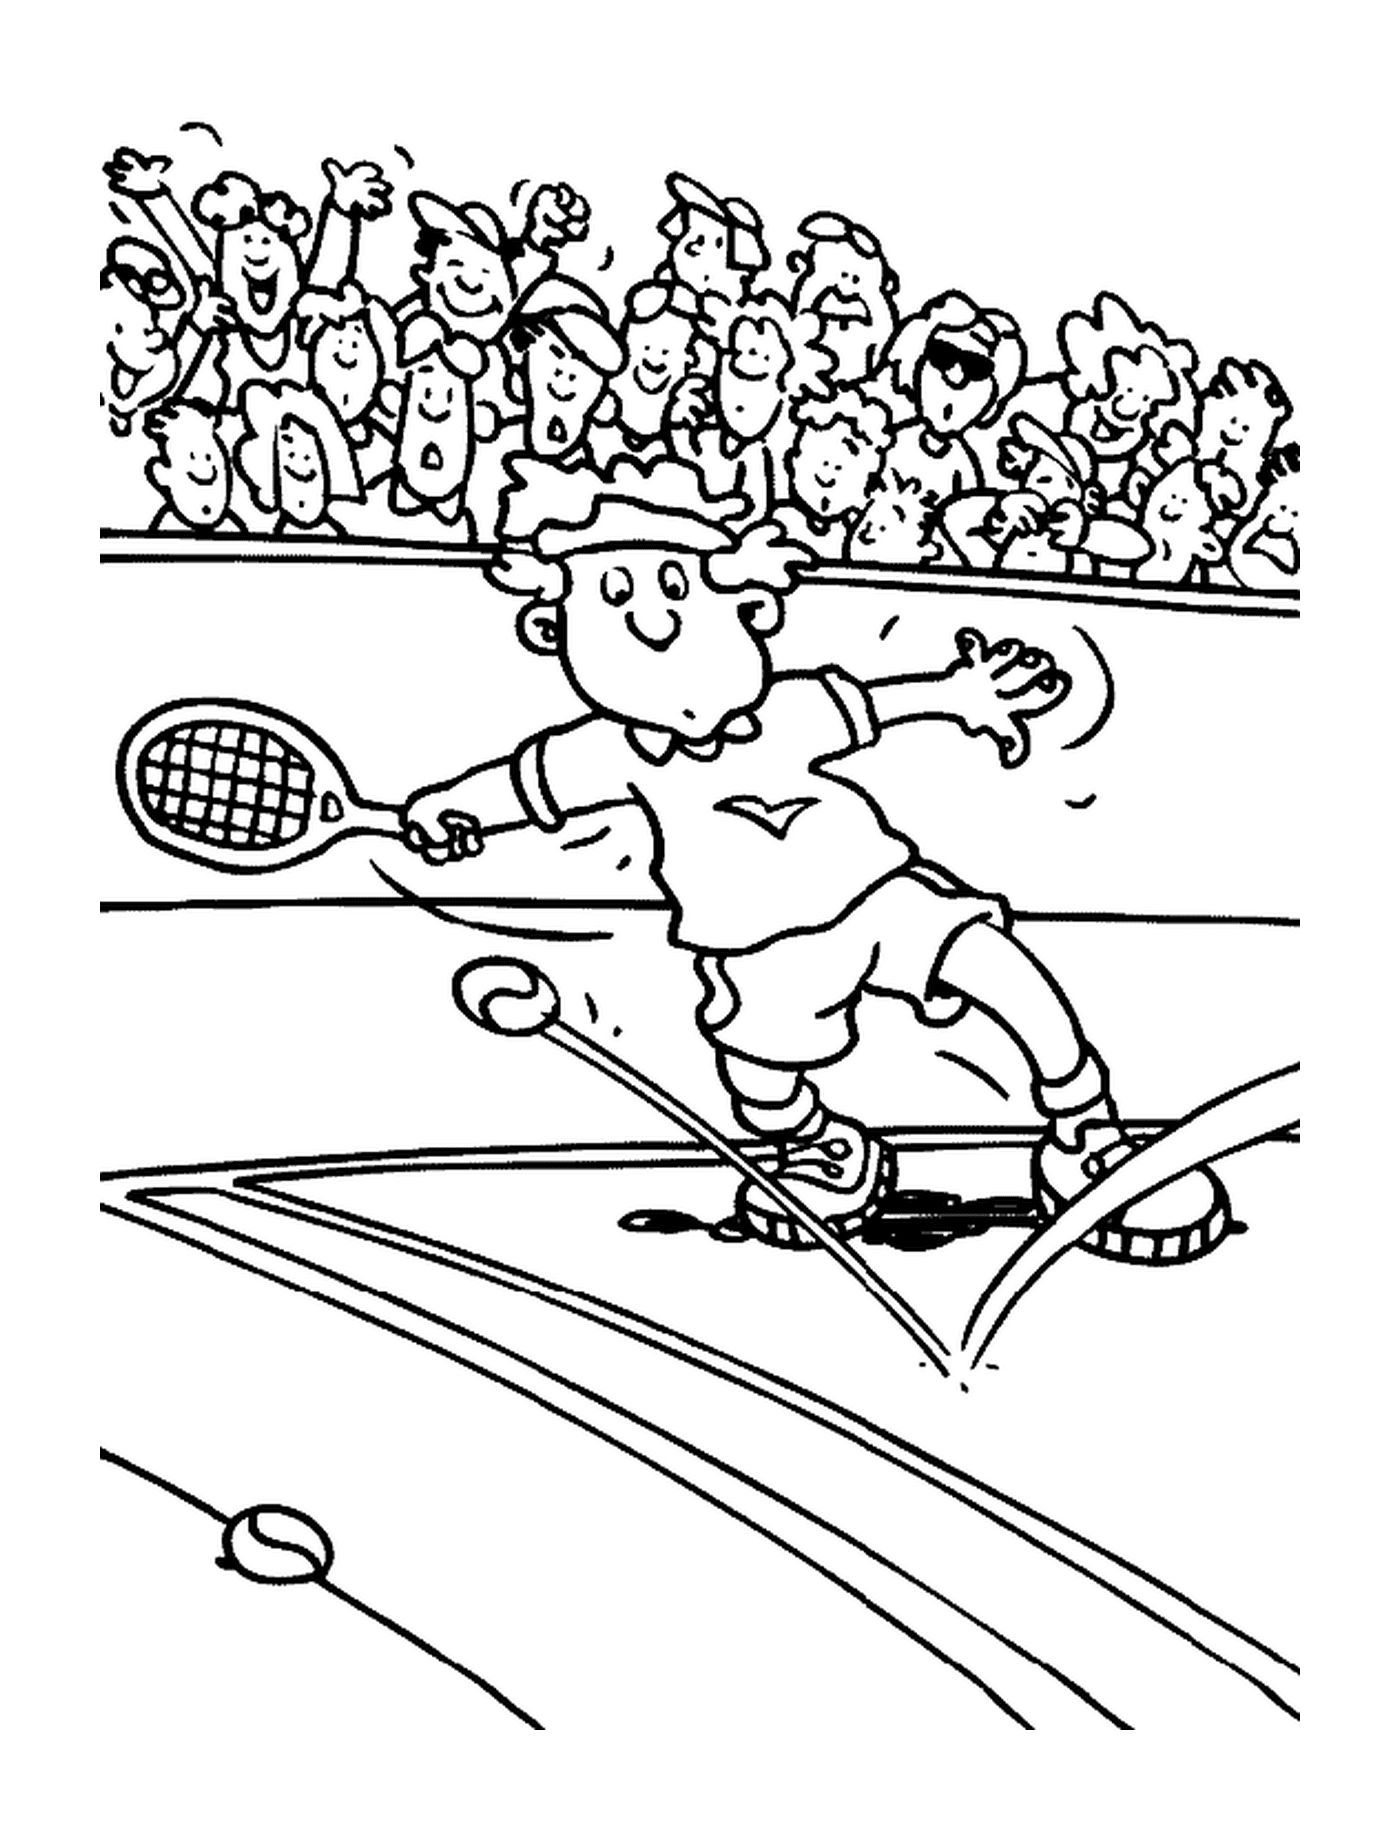   Un homme en action de tennis 